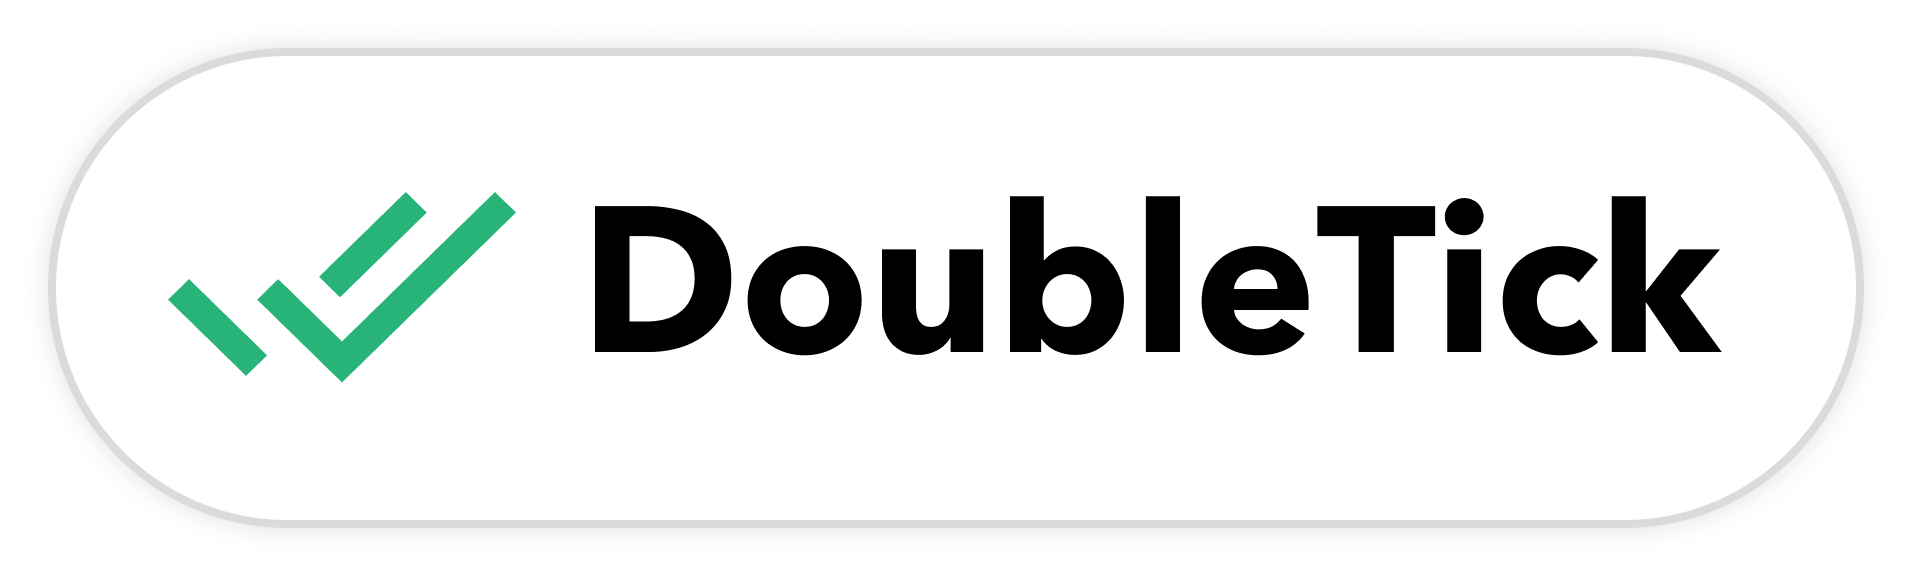 doubeltick_logo